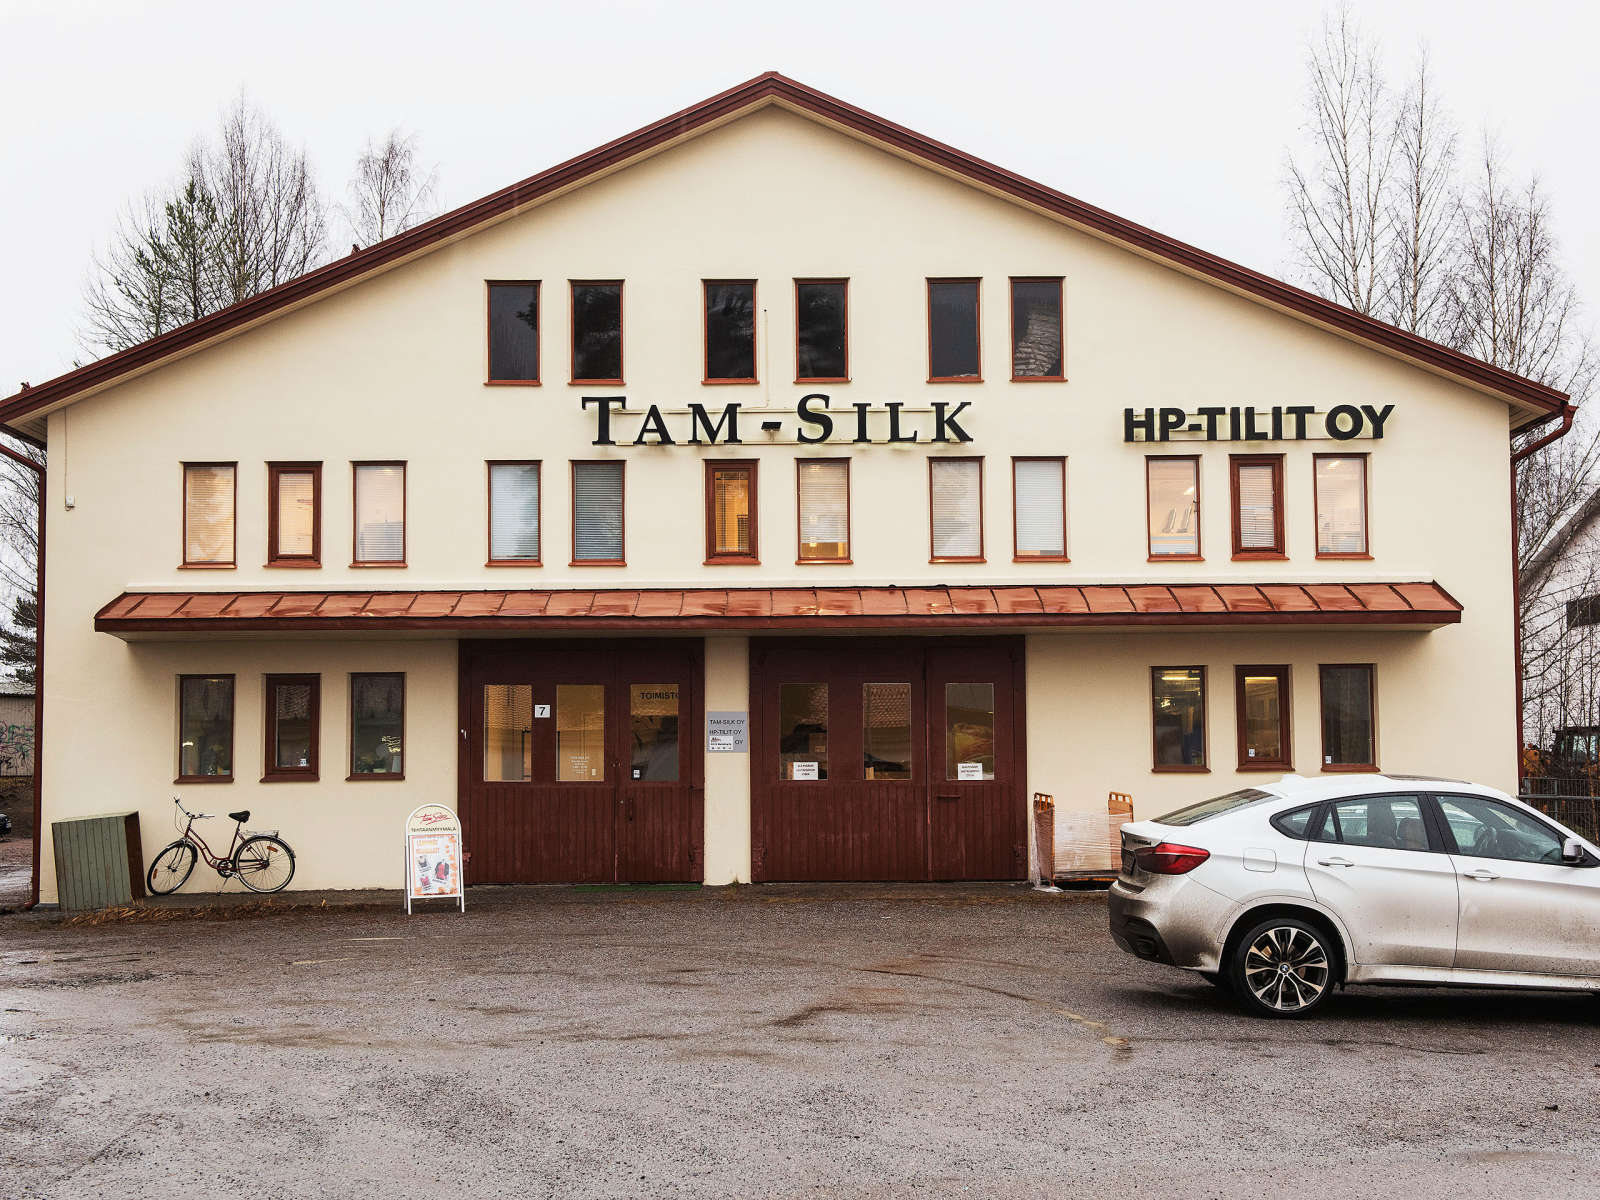 Tampereen silkkikutomo eli nykyinen Tam-Silk